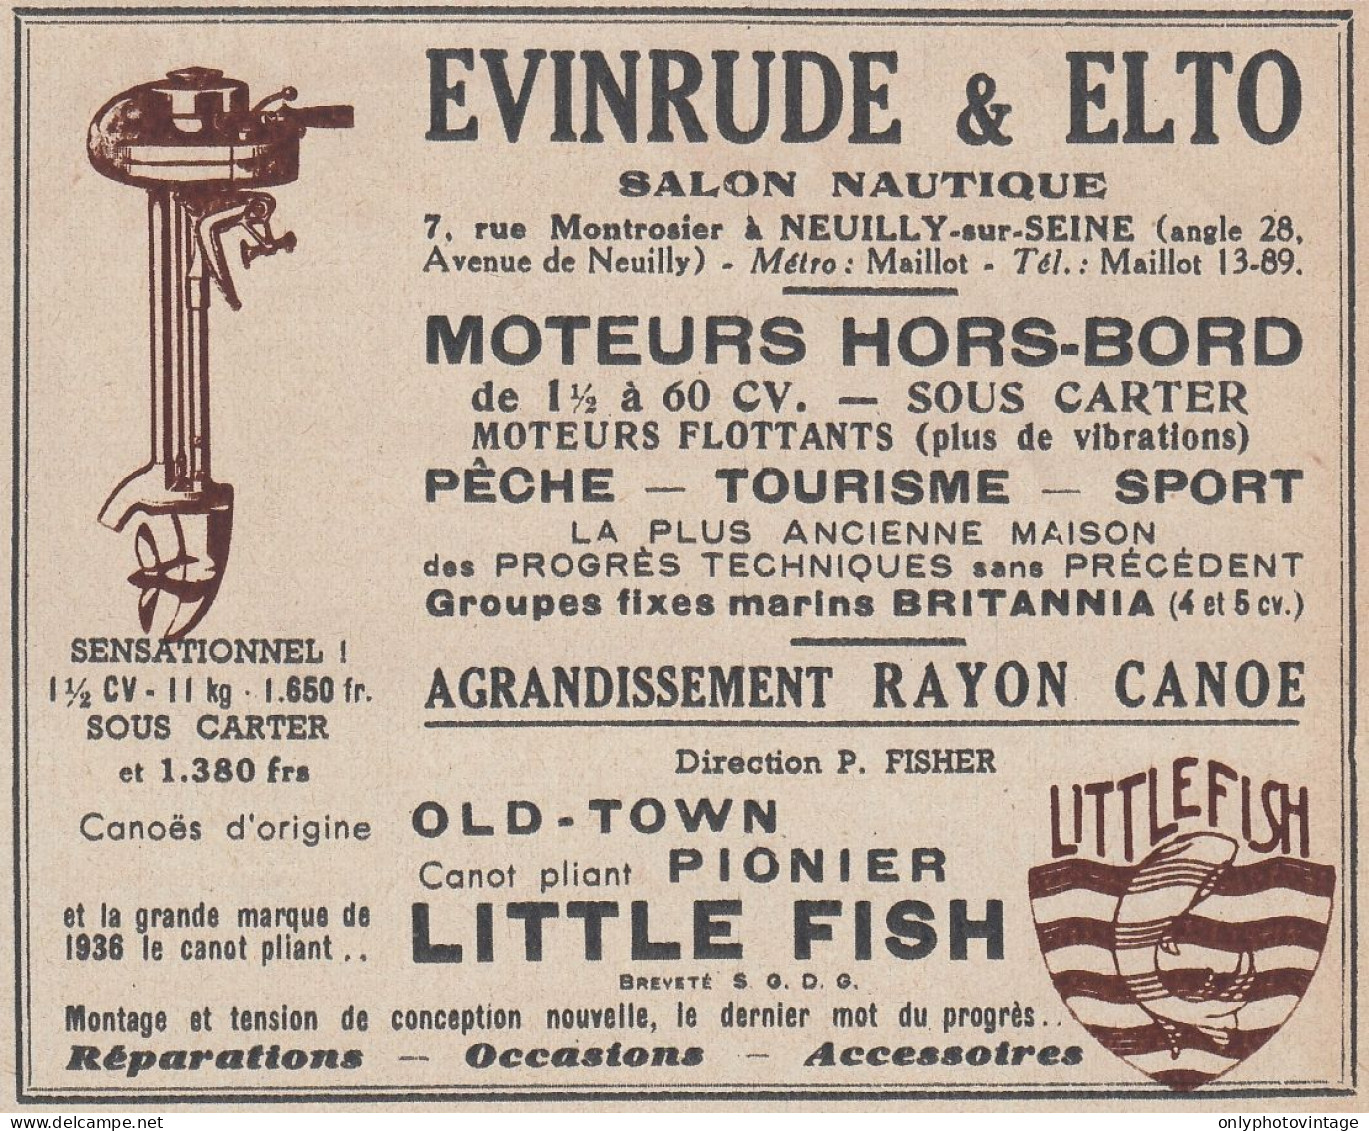 EVINRUDE & ELTO Moteurs Hors-bord - 1936 Vintage Advertising - Pubblicit� - Werbung